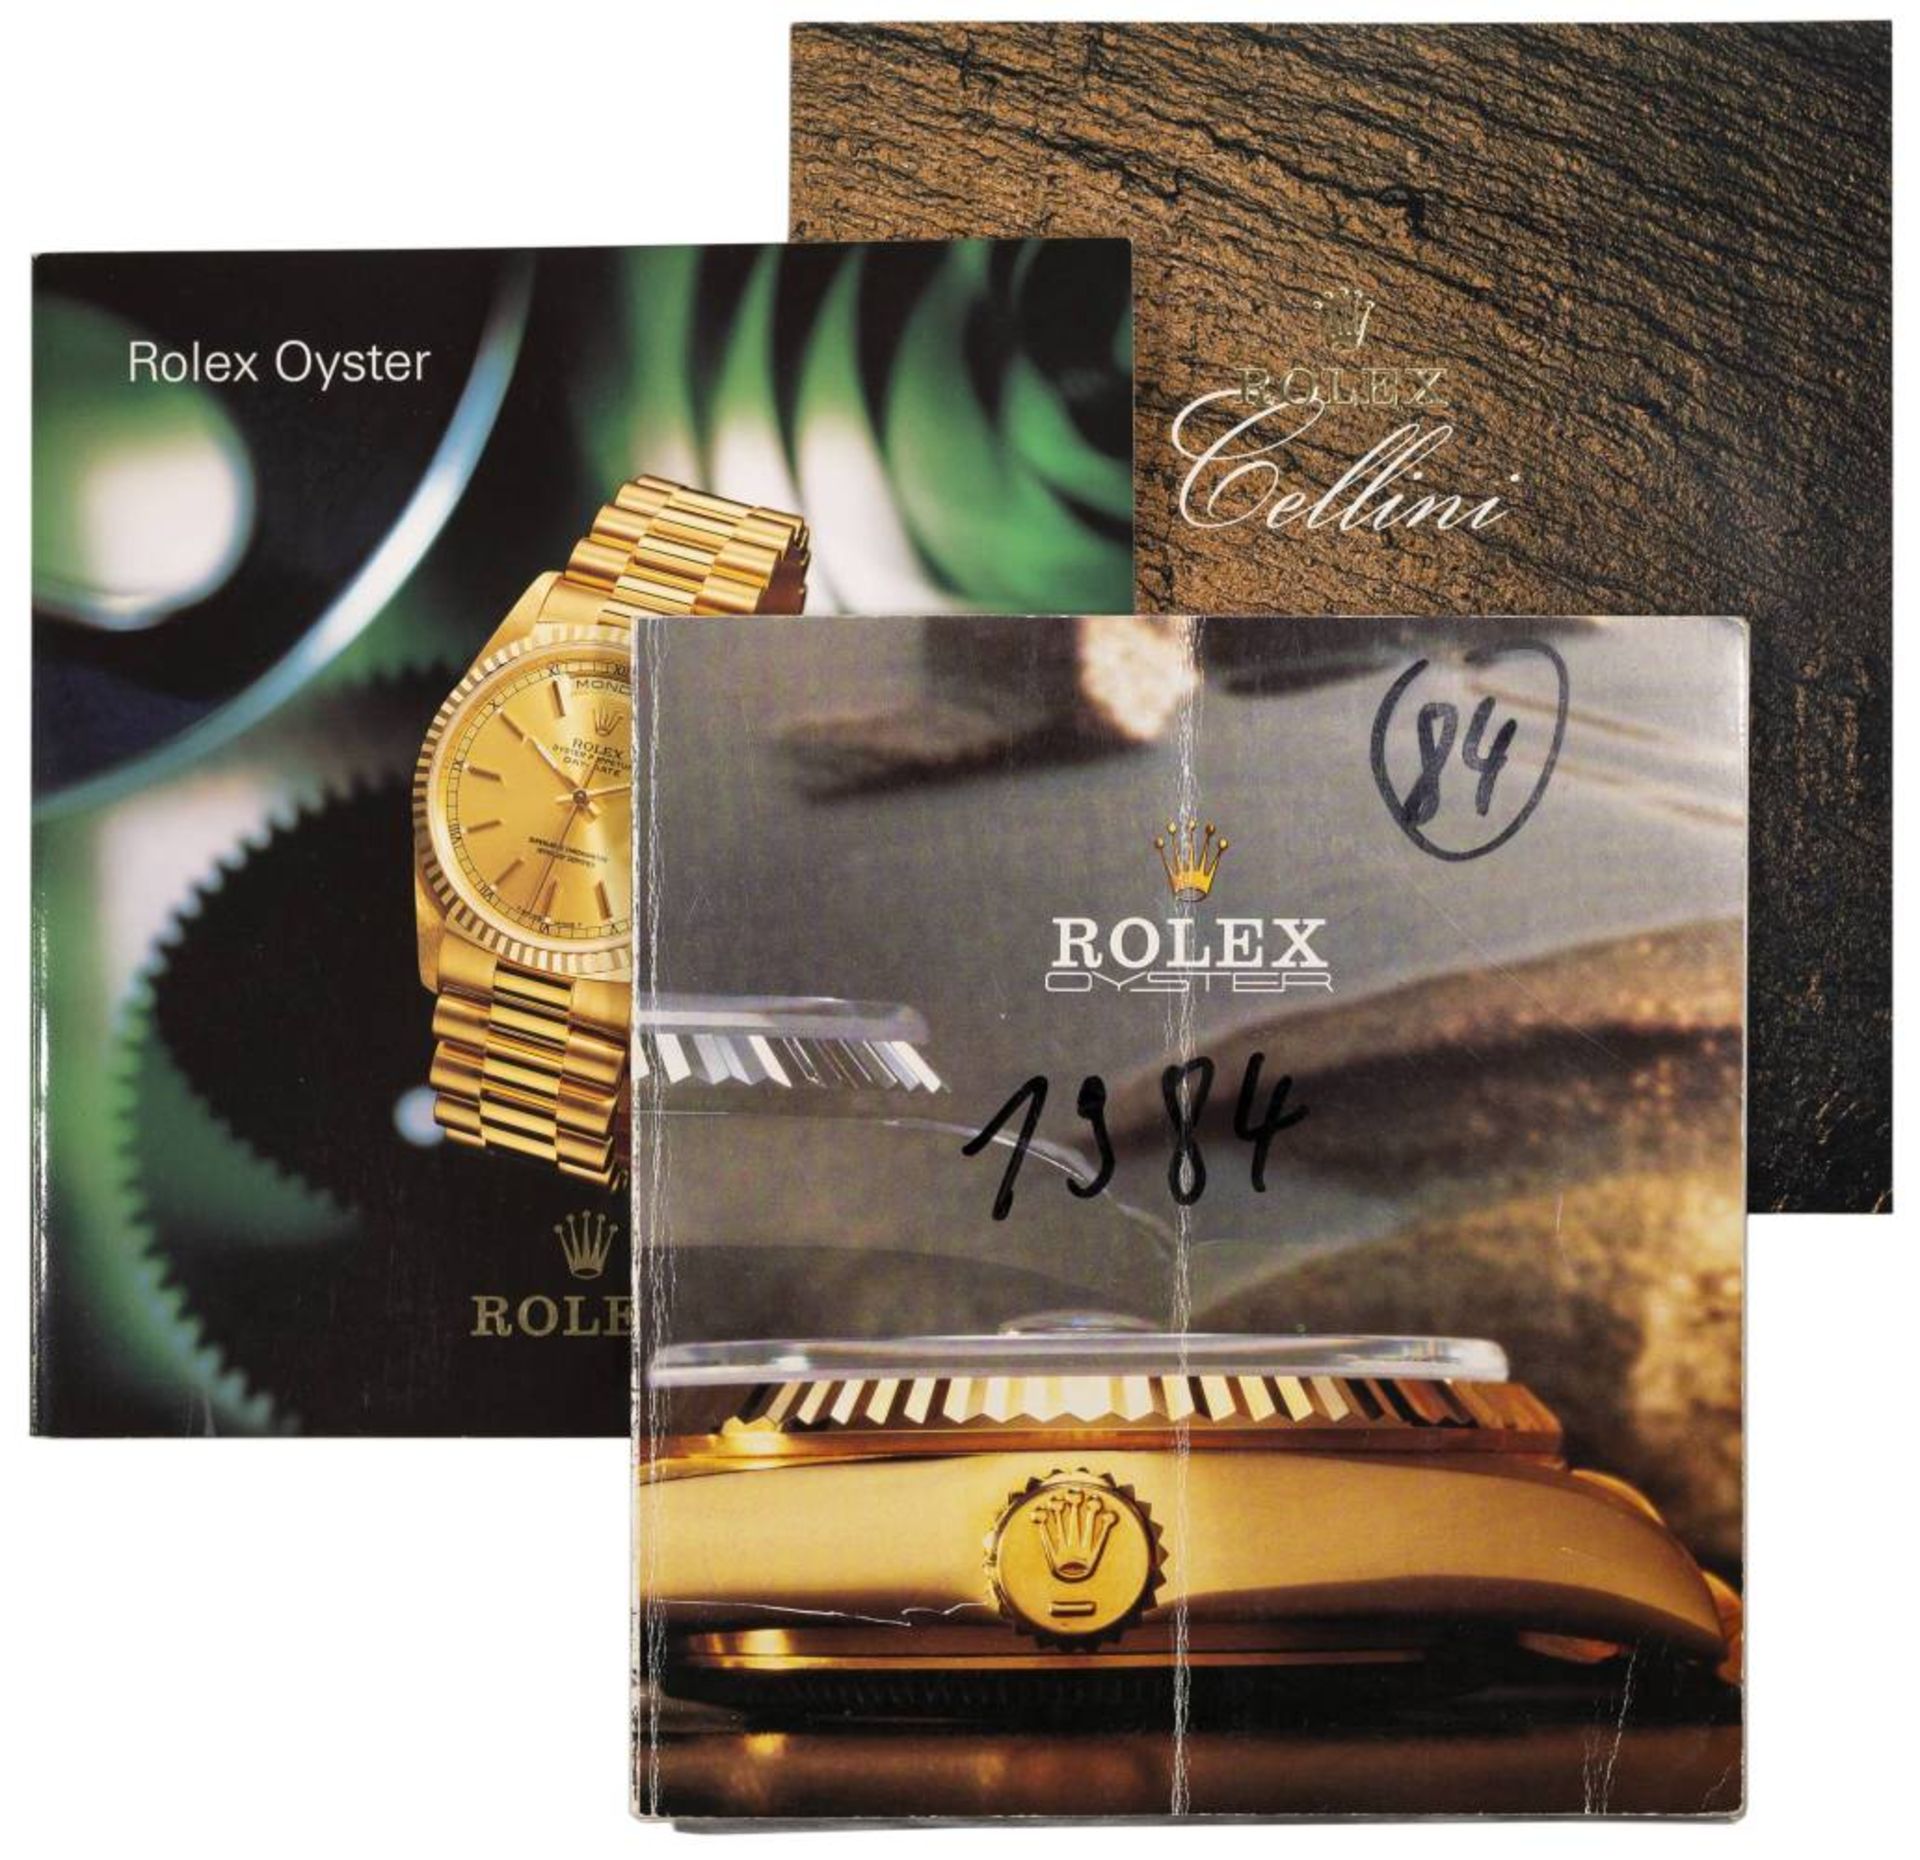 ROLEX - Prospekte und weitere, dabei Rolex-Oyster 1984,1998 und Rolex-Cellini 1998, je inkl. - Image 2 of 4